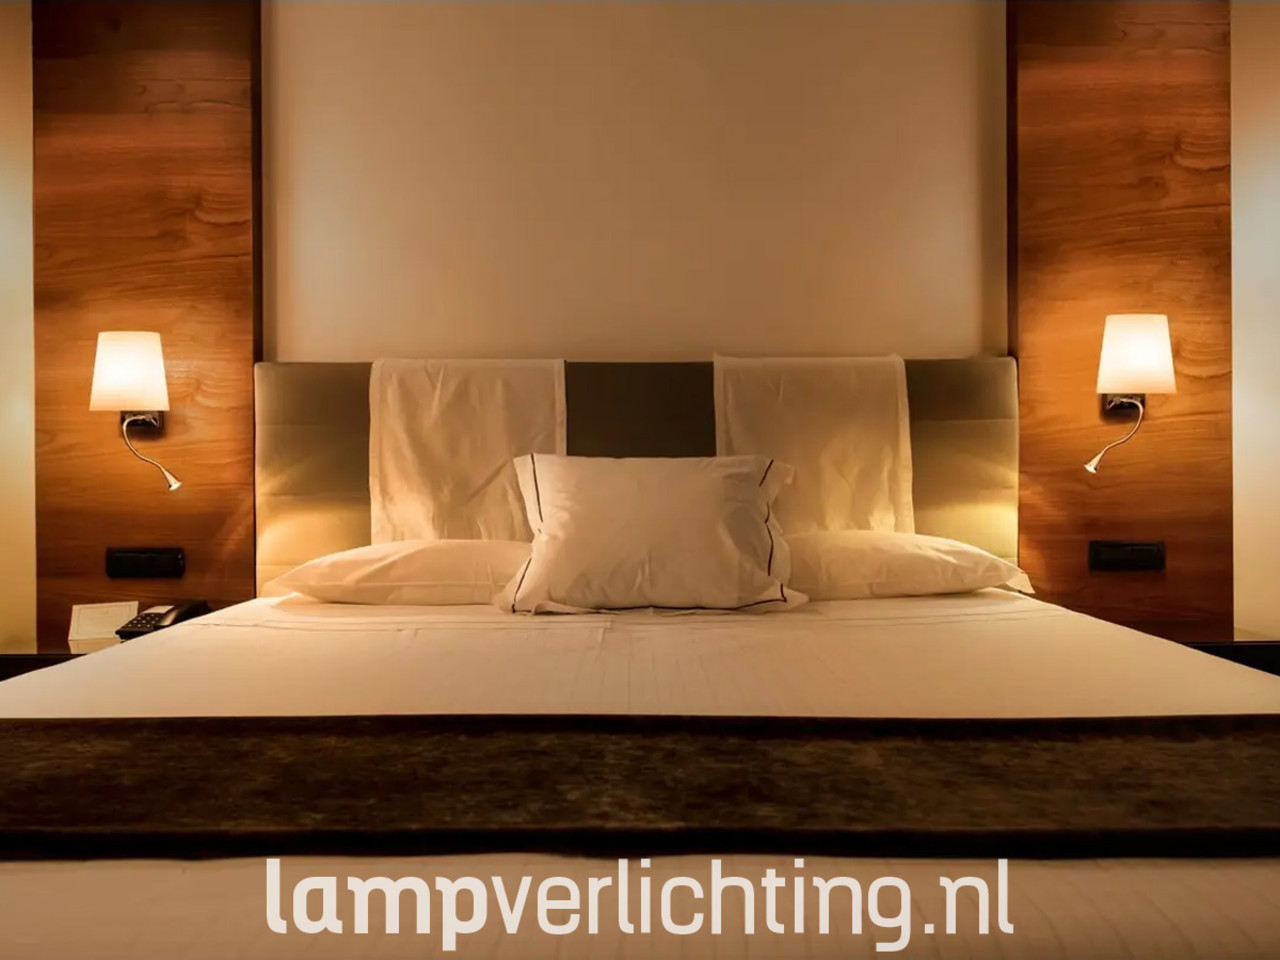 Onderhoud Beschrijven verbinding verbroken Bedlamp met Leeslamp LED - Kap gesatineerd glas - Flexibele leeslamp -  LampVerlichting.nl